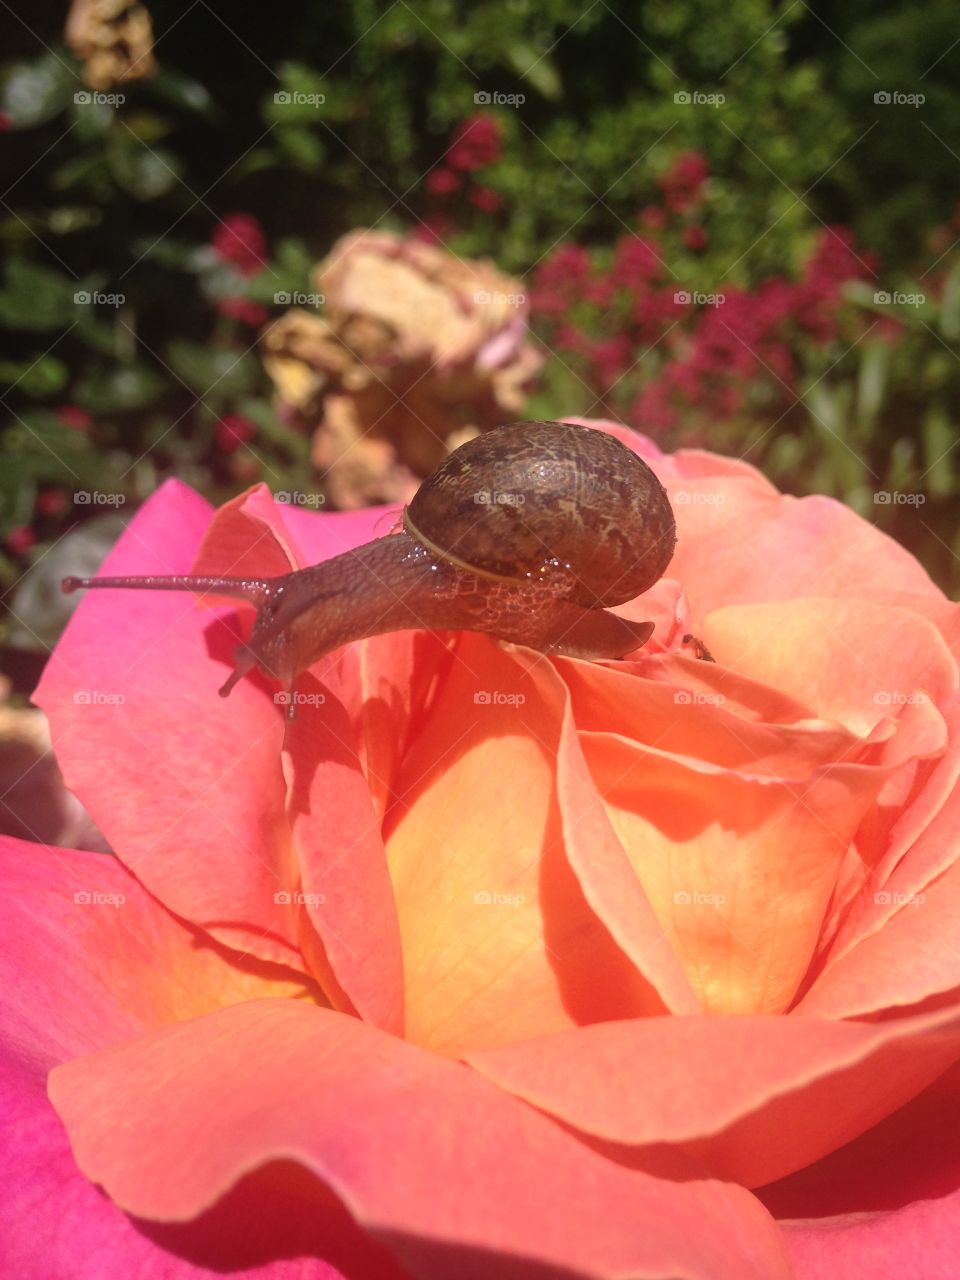 Snail on a rose 